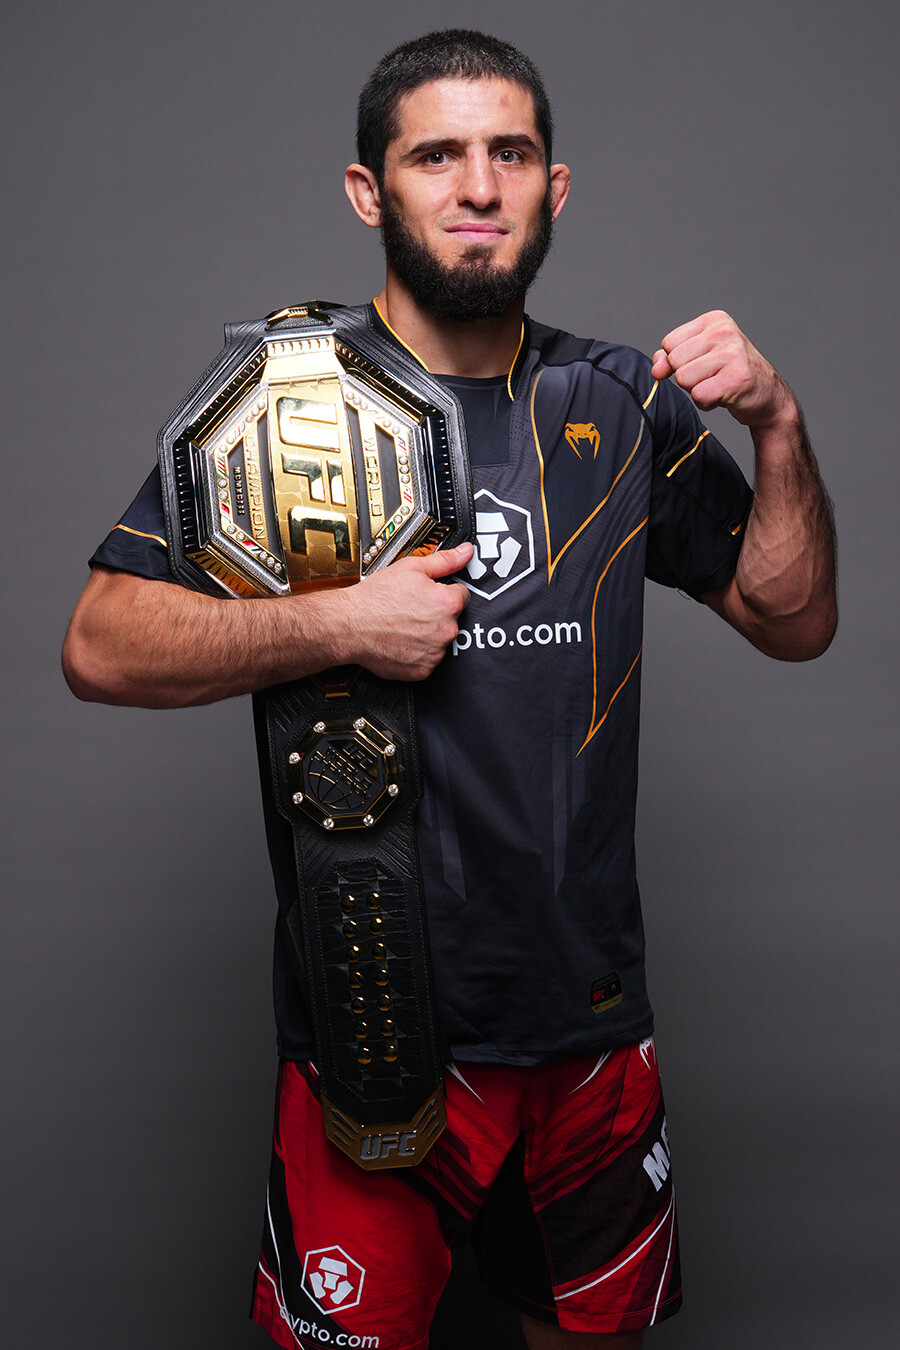 Il russo Islam Makhachev dopo aver vinto il titolo di campione dei pesi leggeri UFC il 22 ottobre 2022 ad Abu Dhabi, negli Emirati Arabi Uniti